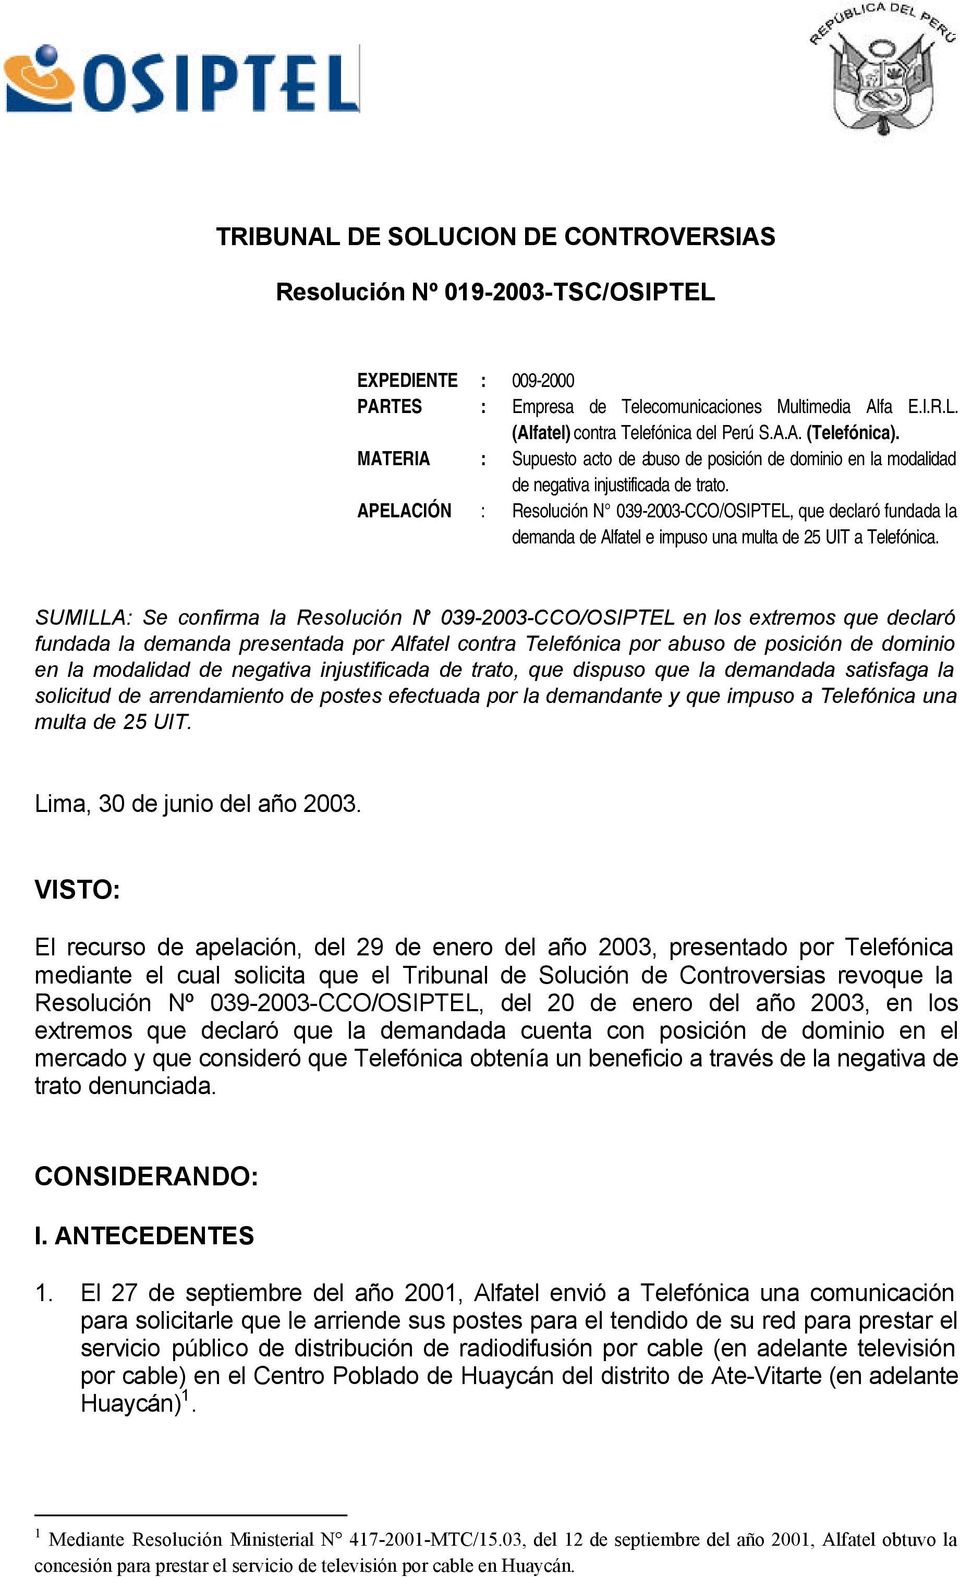 APELACIÓN : Resolución N 039-2003-CCO/OSIPTEL, que declaró fundada la demanda de Alfatel e impuso una multa de 25 UIT a Telefónica.